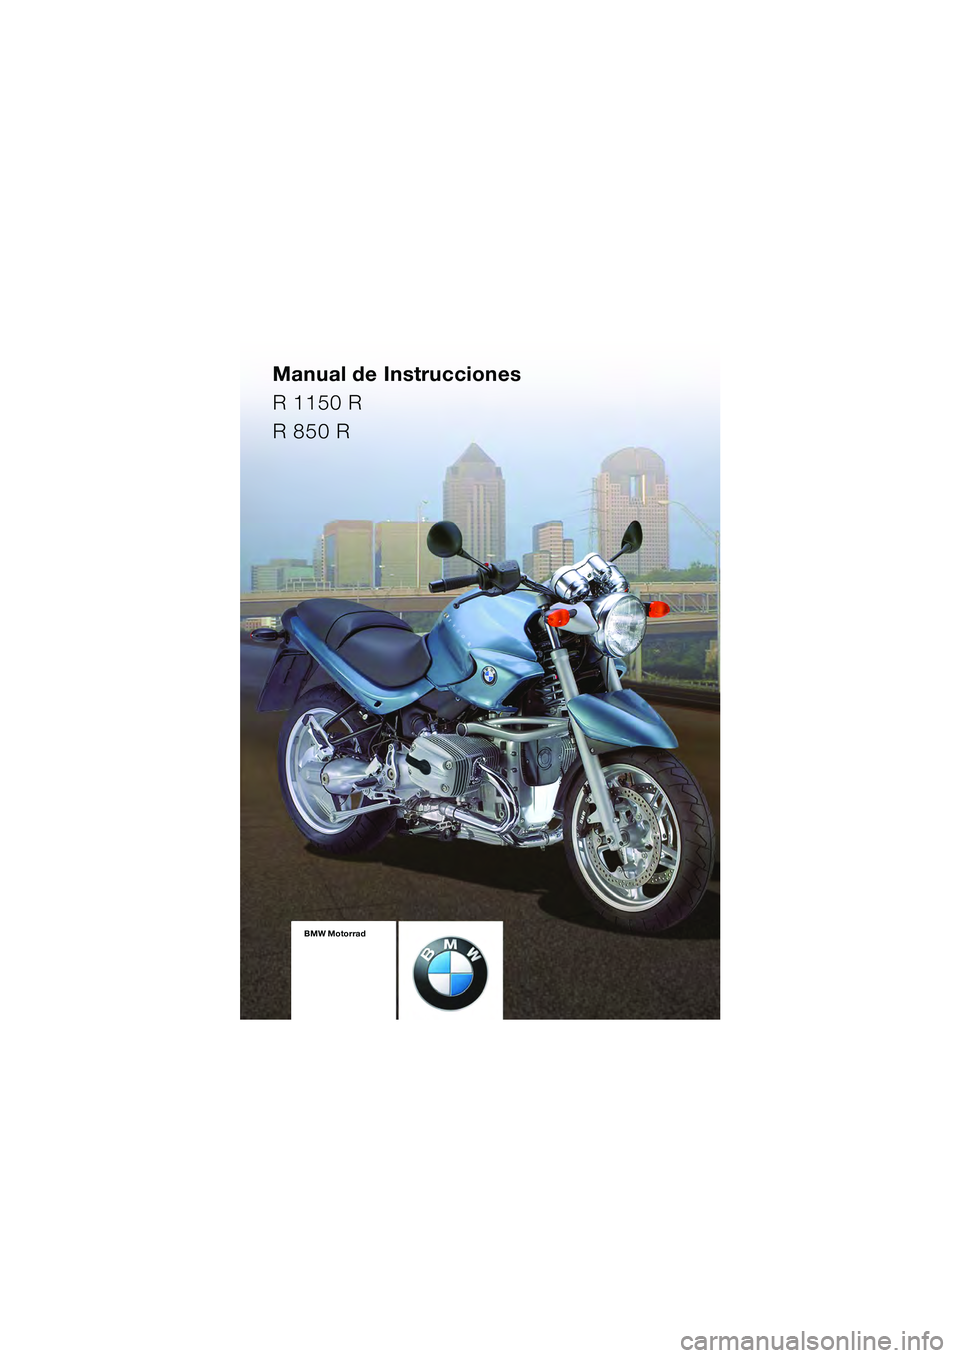 BMW MOTORRAD R 850 R 2004  Manual de instrucciones (in Spanish) Manual de Instrucciones
R 1150 R
R 850 R
BMW Motorrad
10r28bke3.book  Seite 89  Dienstag, 25. Mai 2004  5:58 17 